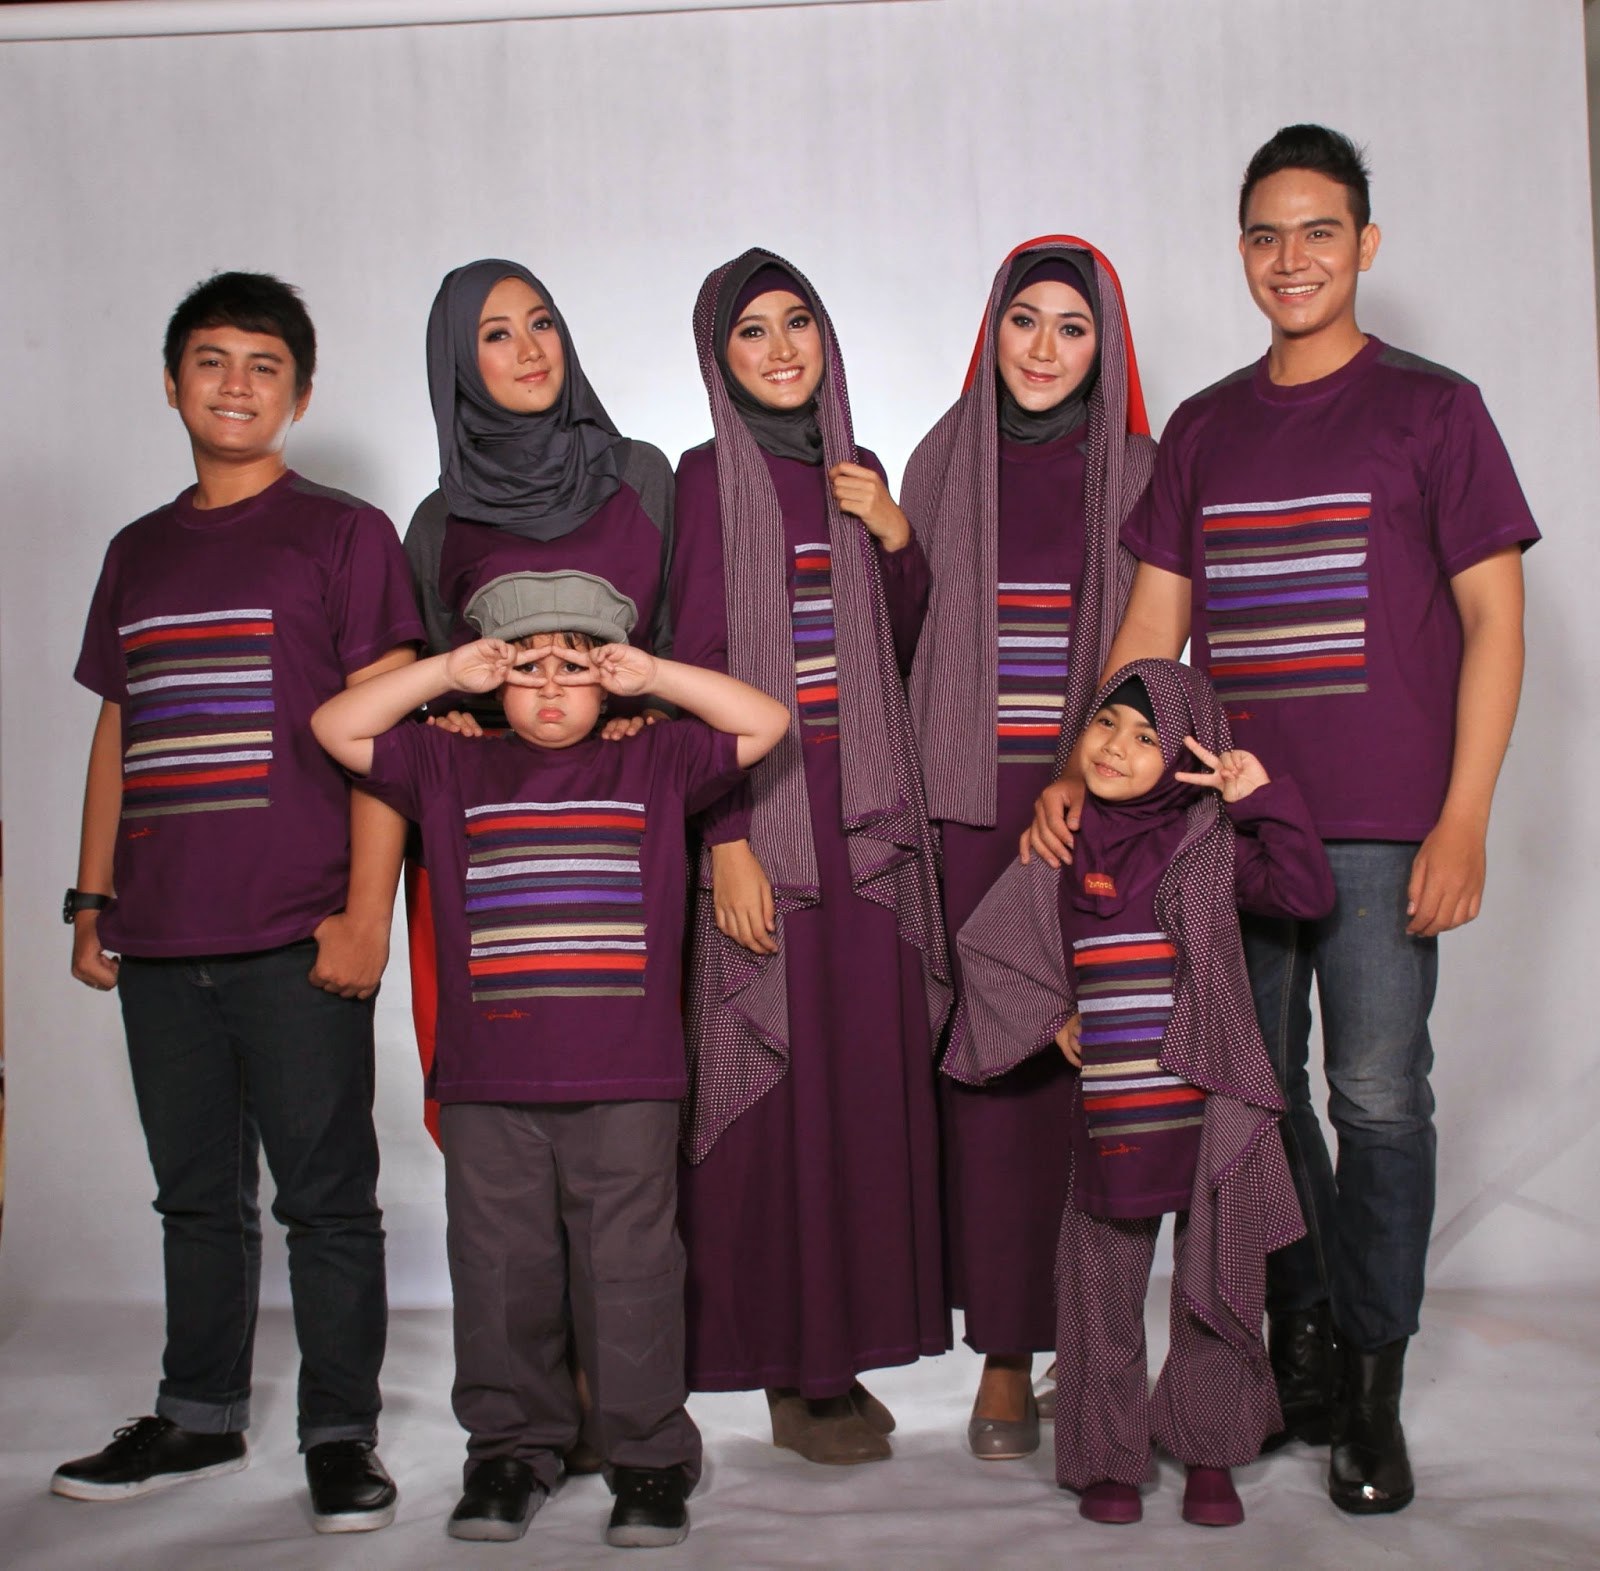 Bentuk Baju Lebaran Keluarga 2020 T8dj Model Baju Keluarga Untuk Hari Raya Lebaran 2018